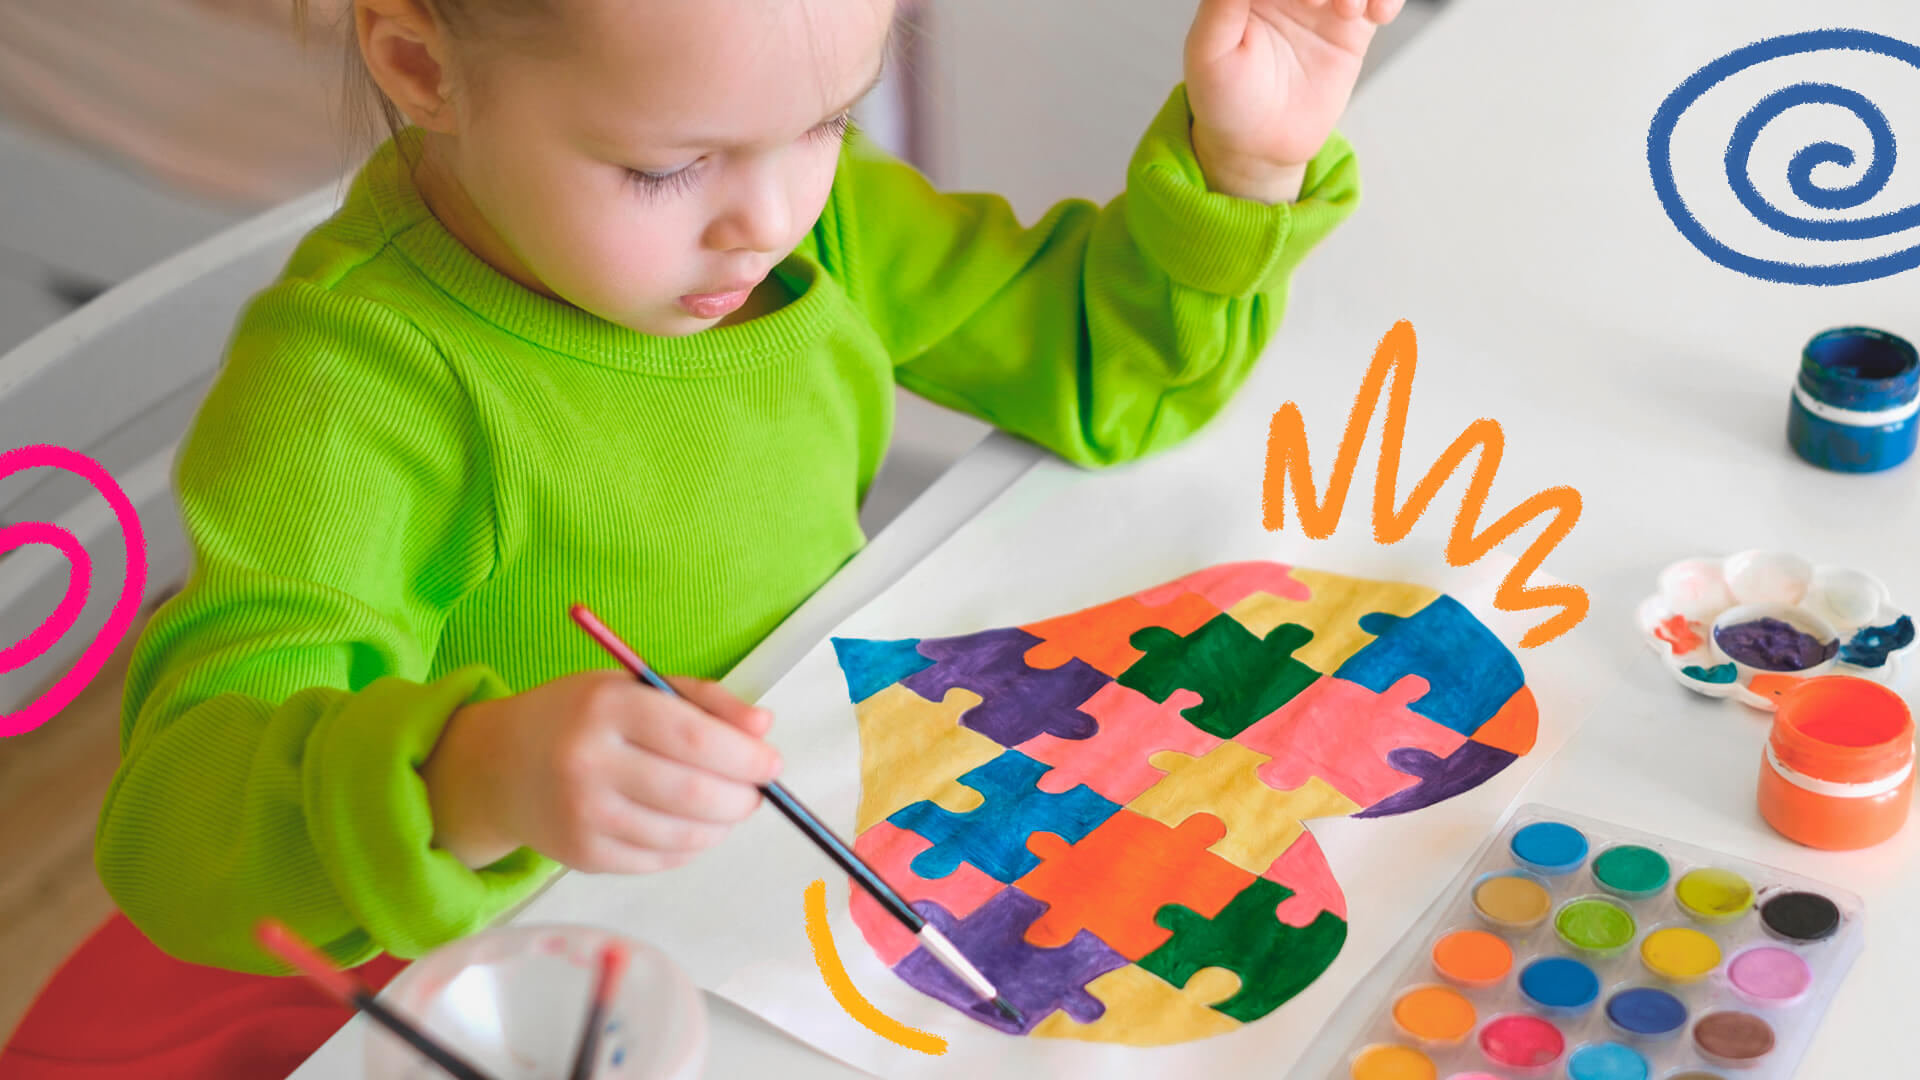 Uma criança branca pinsa um quadro com peças de quebra-cabeça, símbolo do espectro autista.